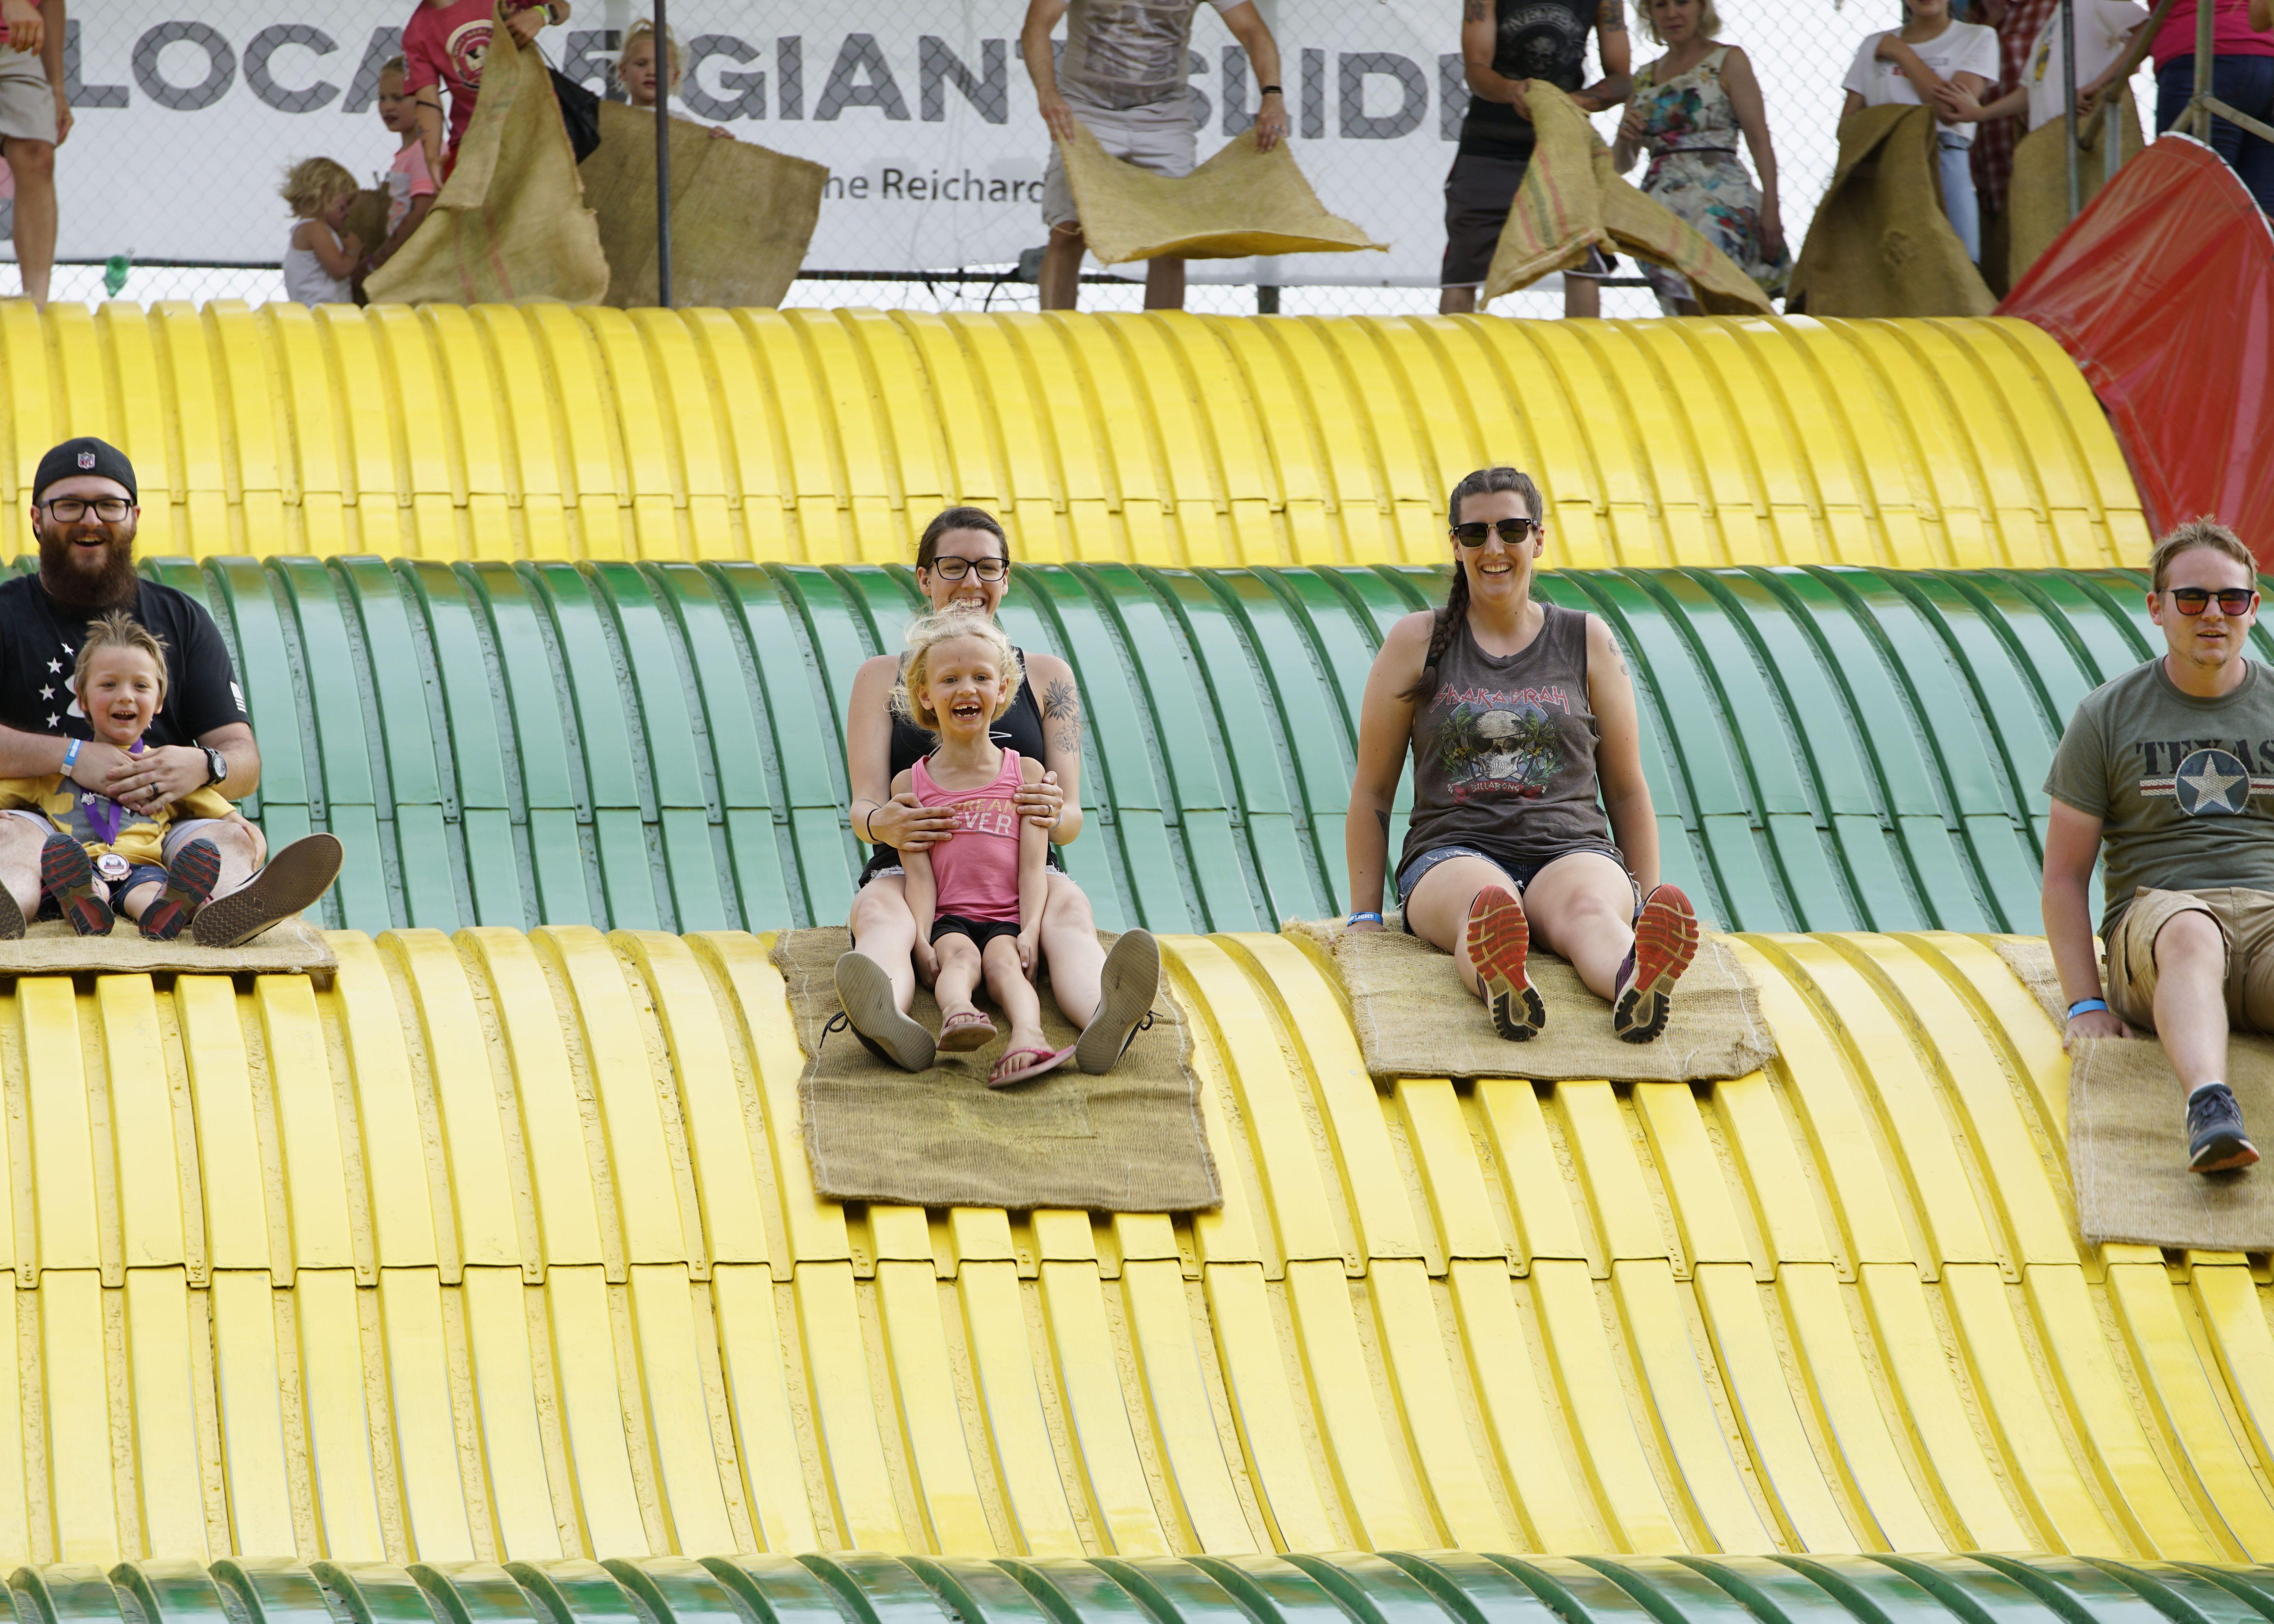 Fairgoers on the Giant Slide